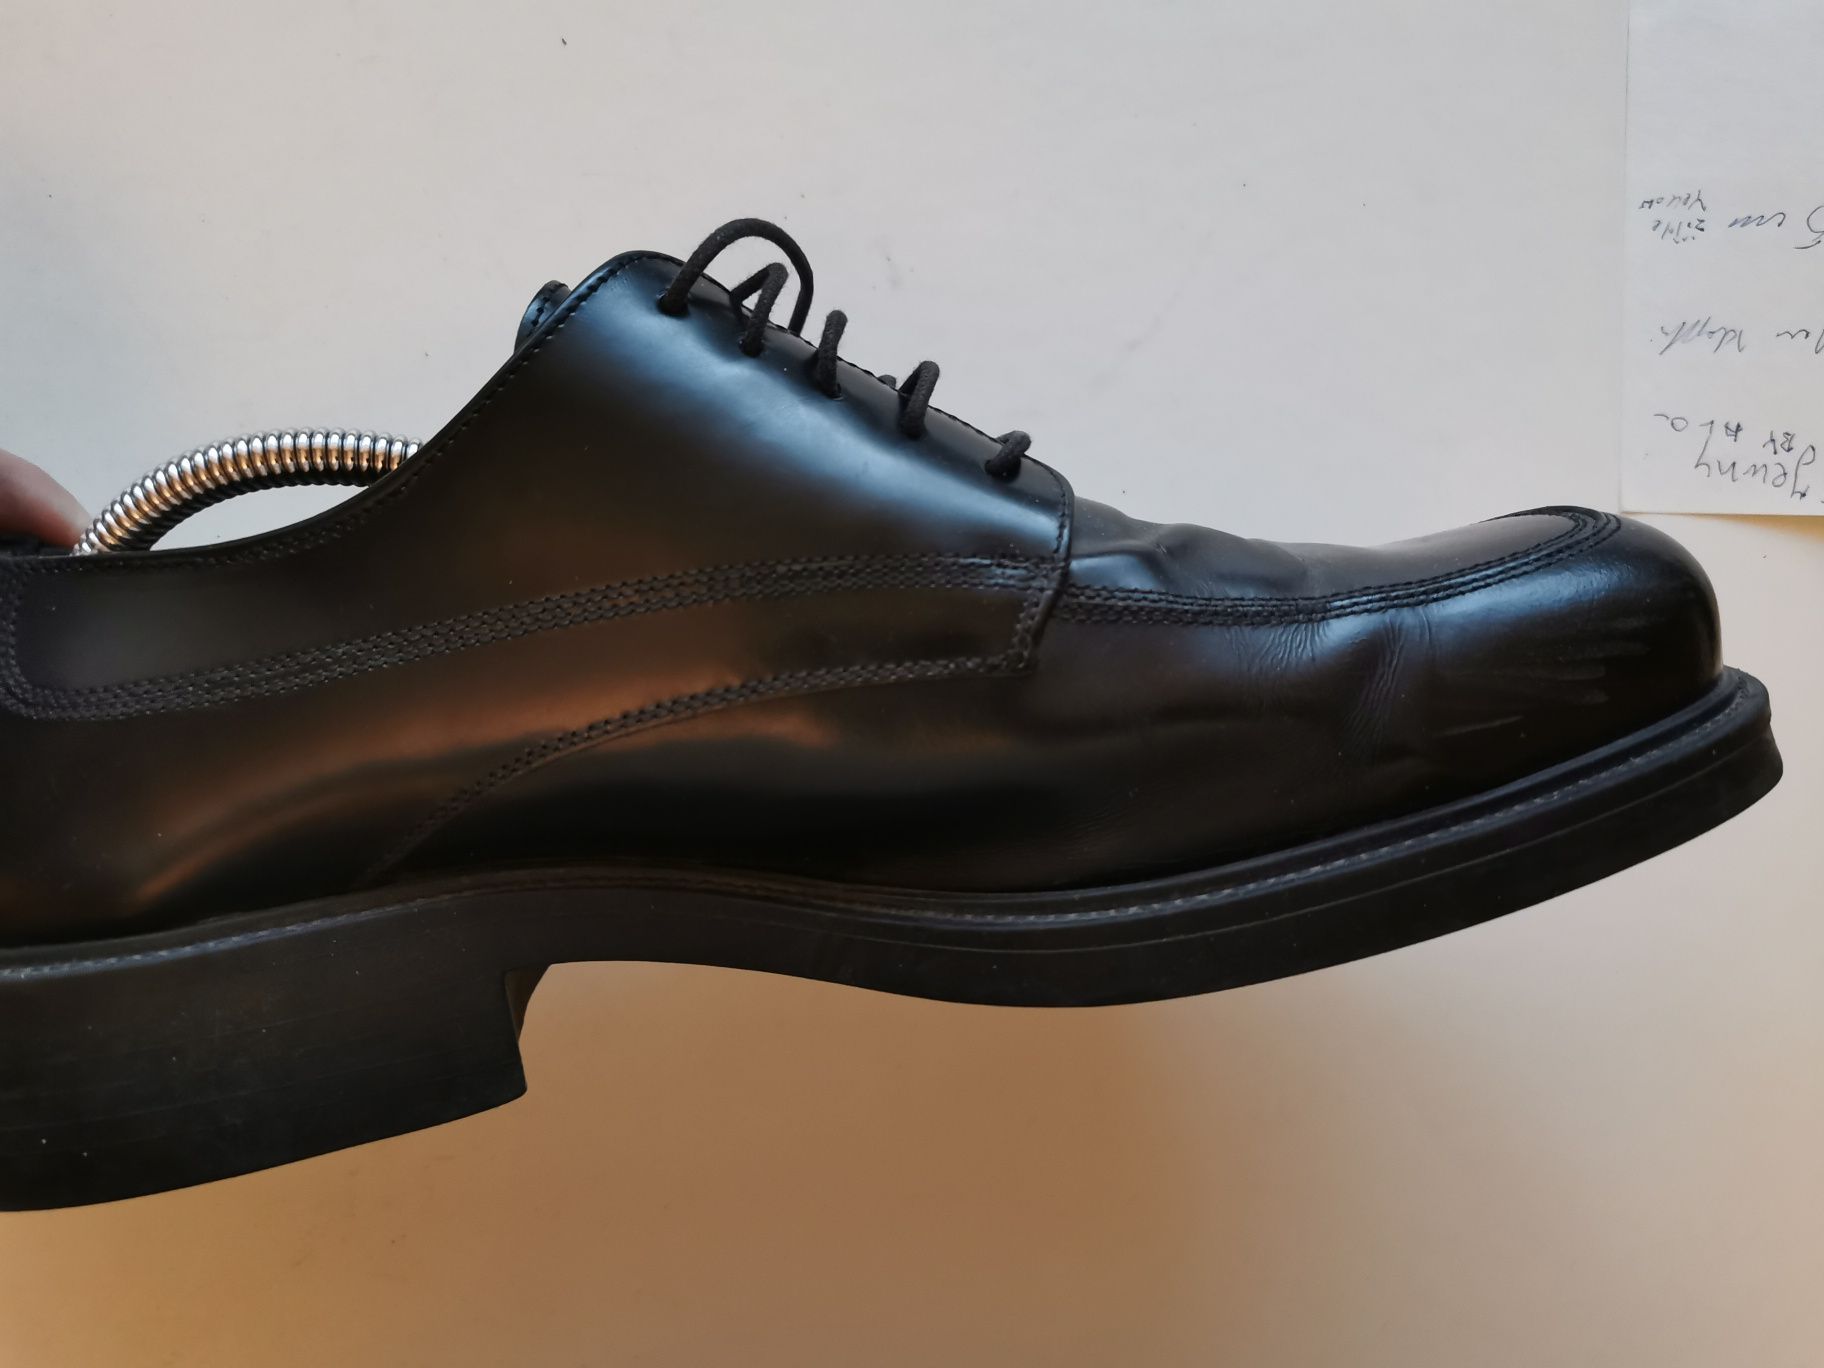 Buty meskie skórzane włoskiej firmy Hipo Rozmiar 31  31.5 cm